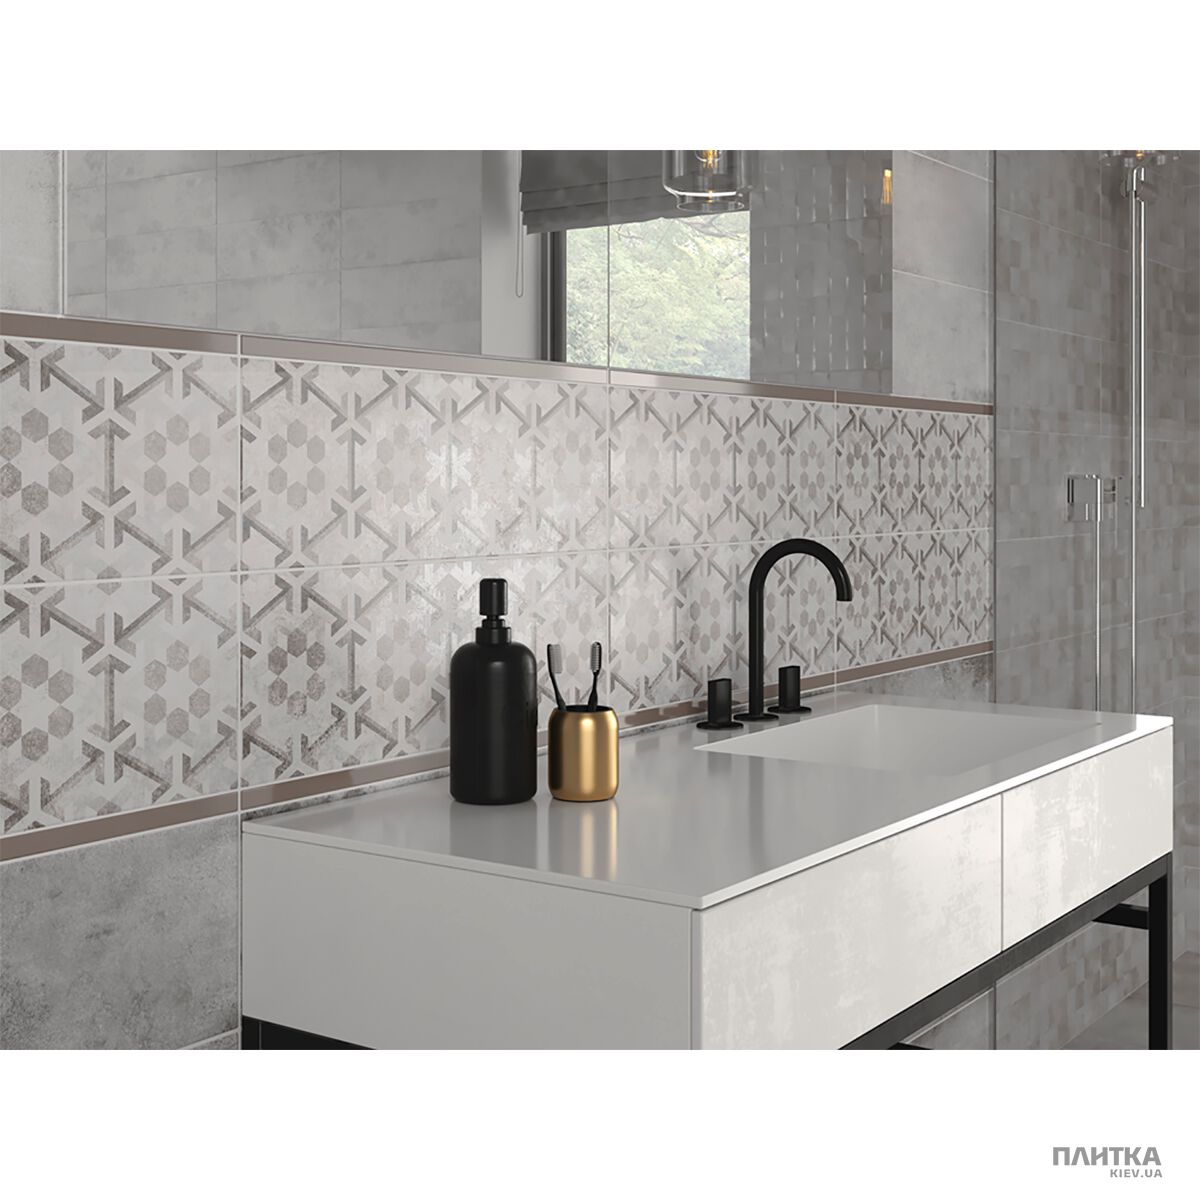 Плитка Cersanit Concrete Style CONCRETE STYLE INSERTO GEOMETRIC серый